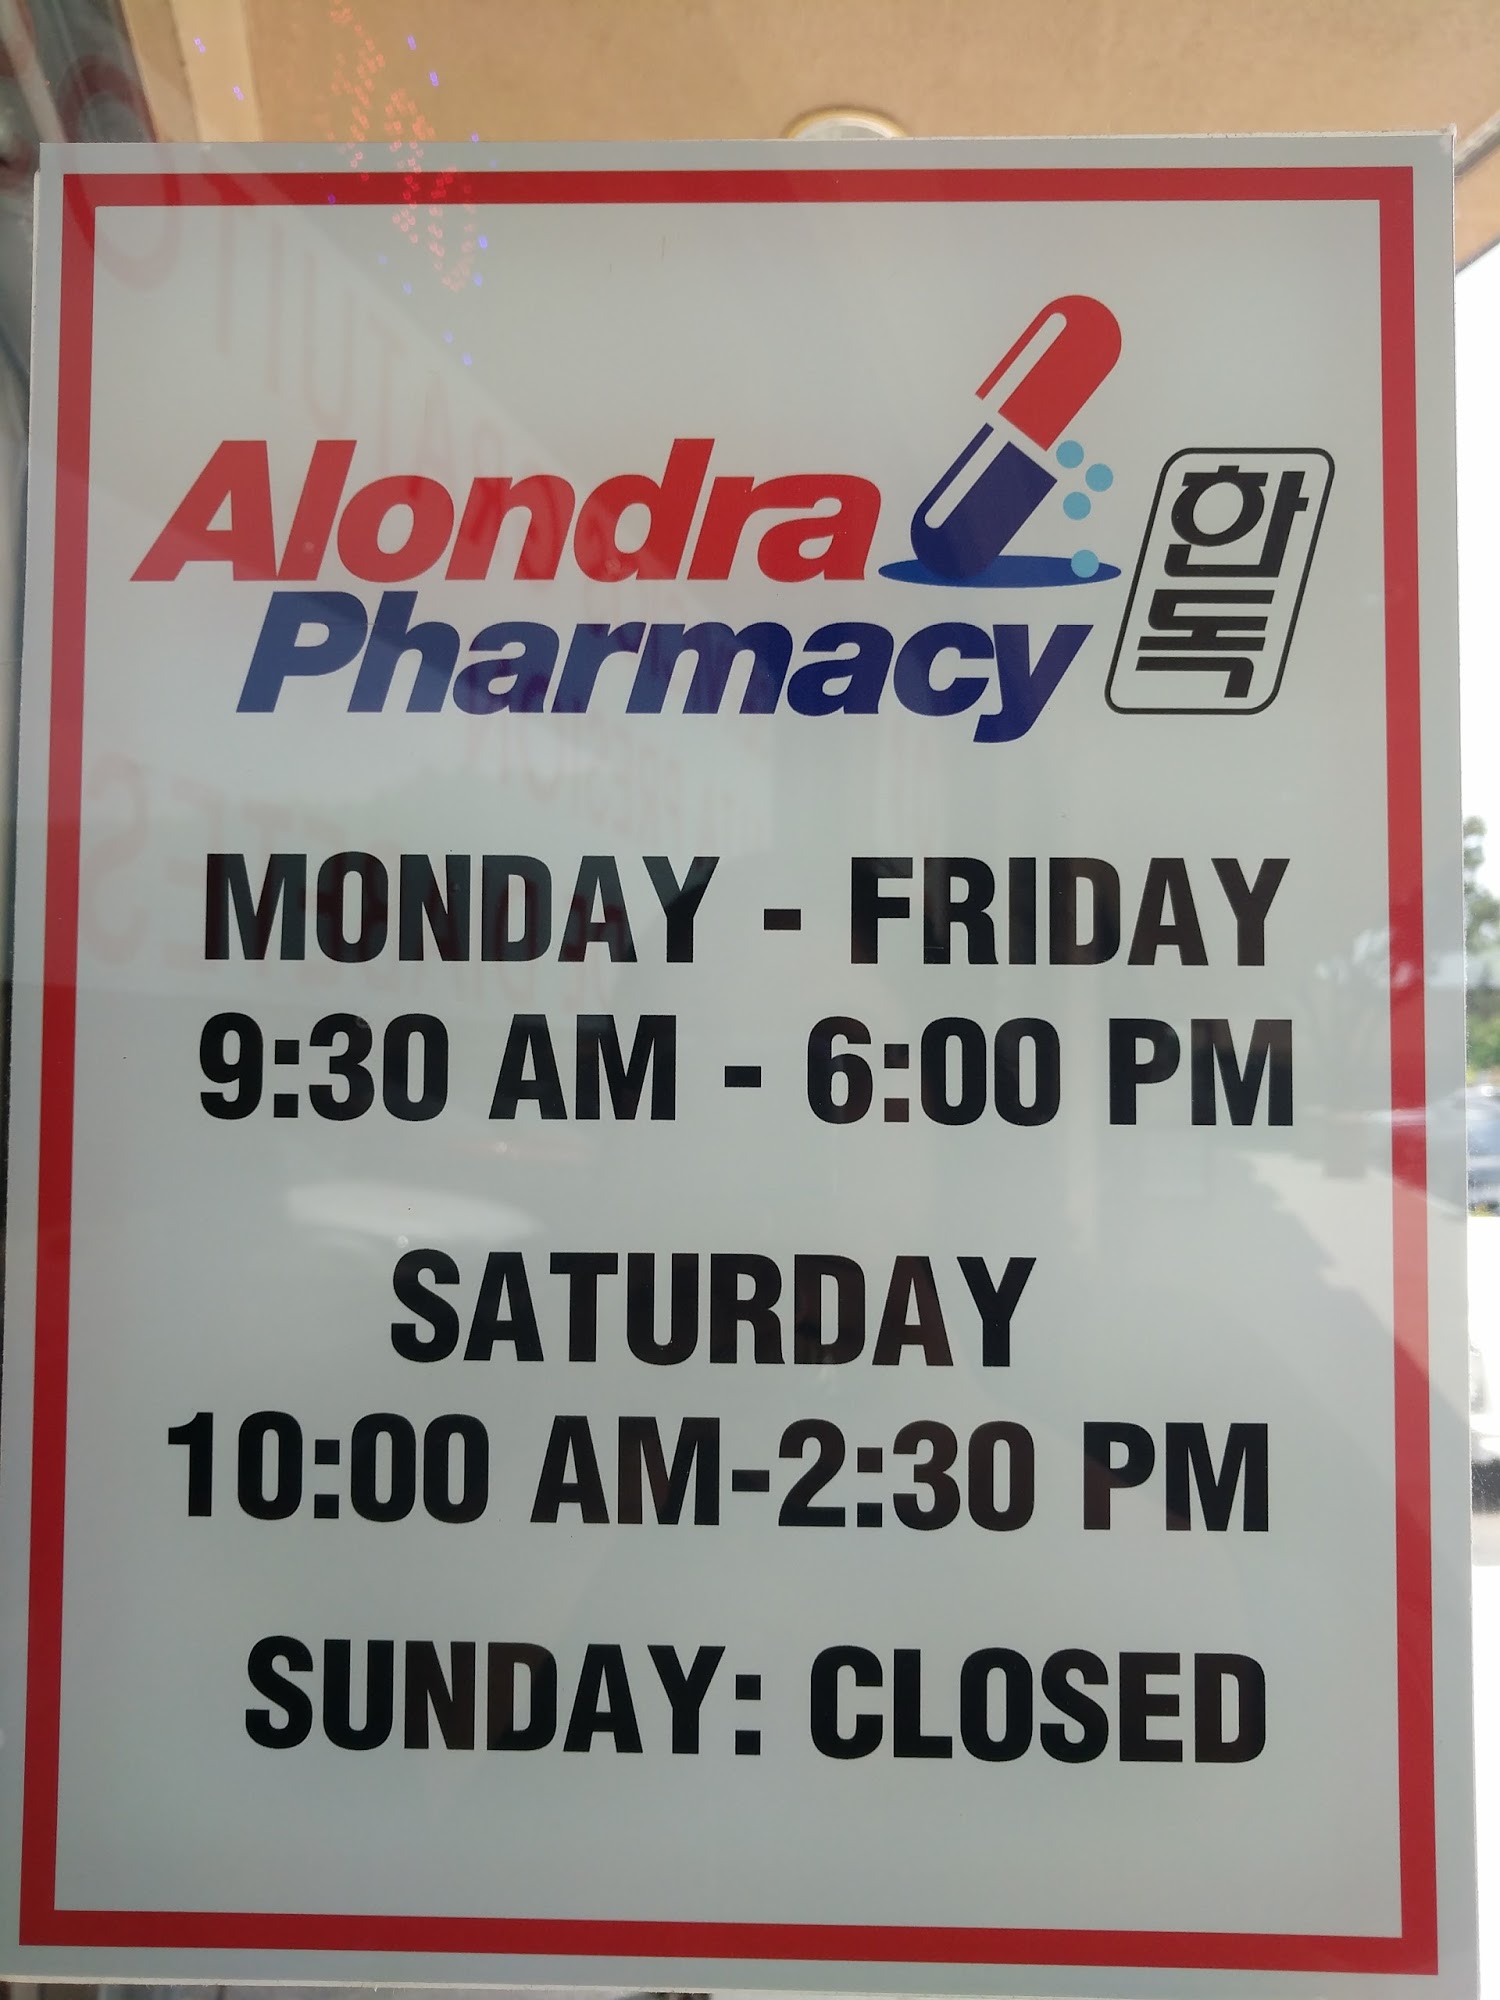 Alondra Pharmacy